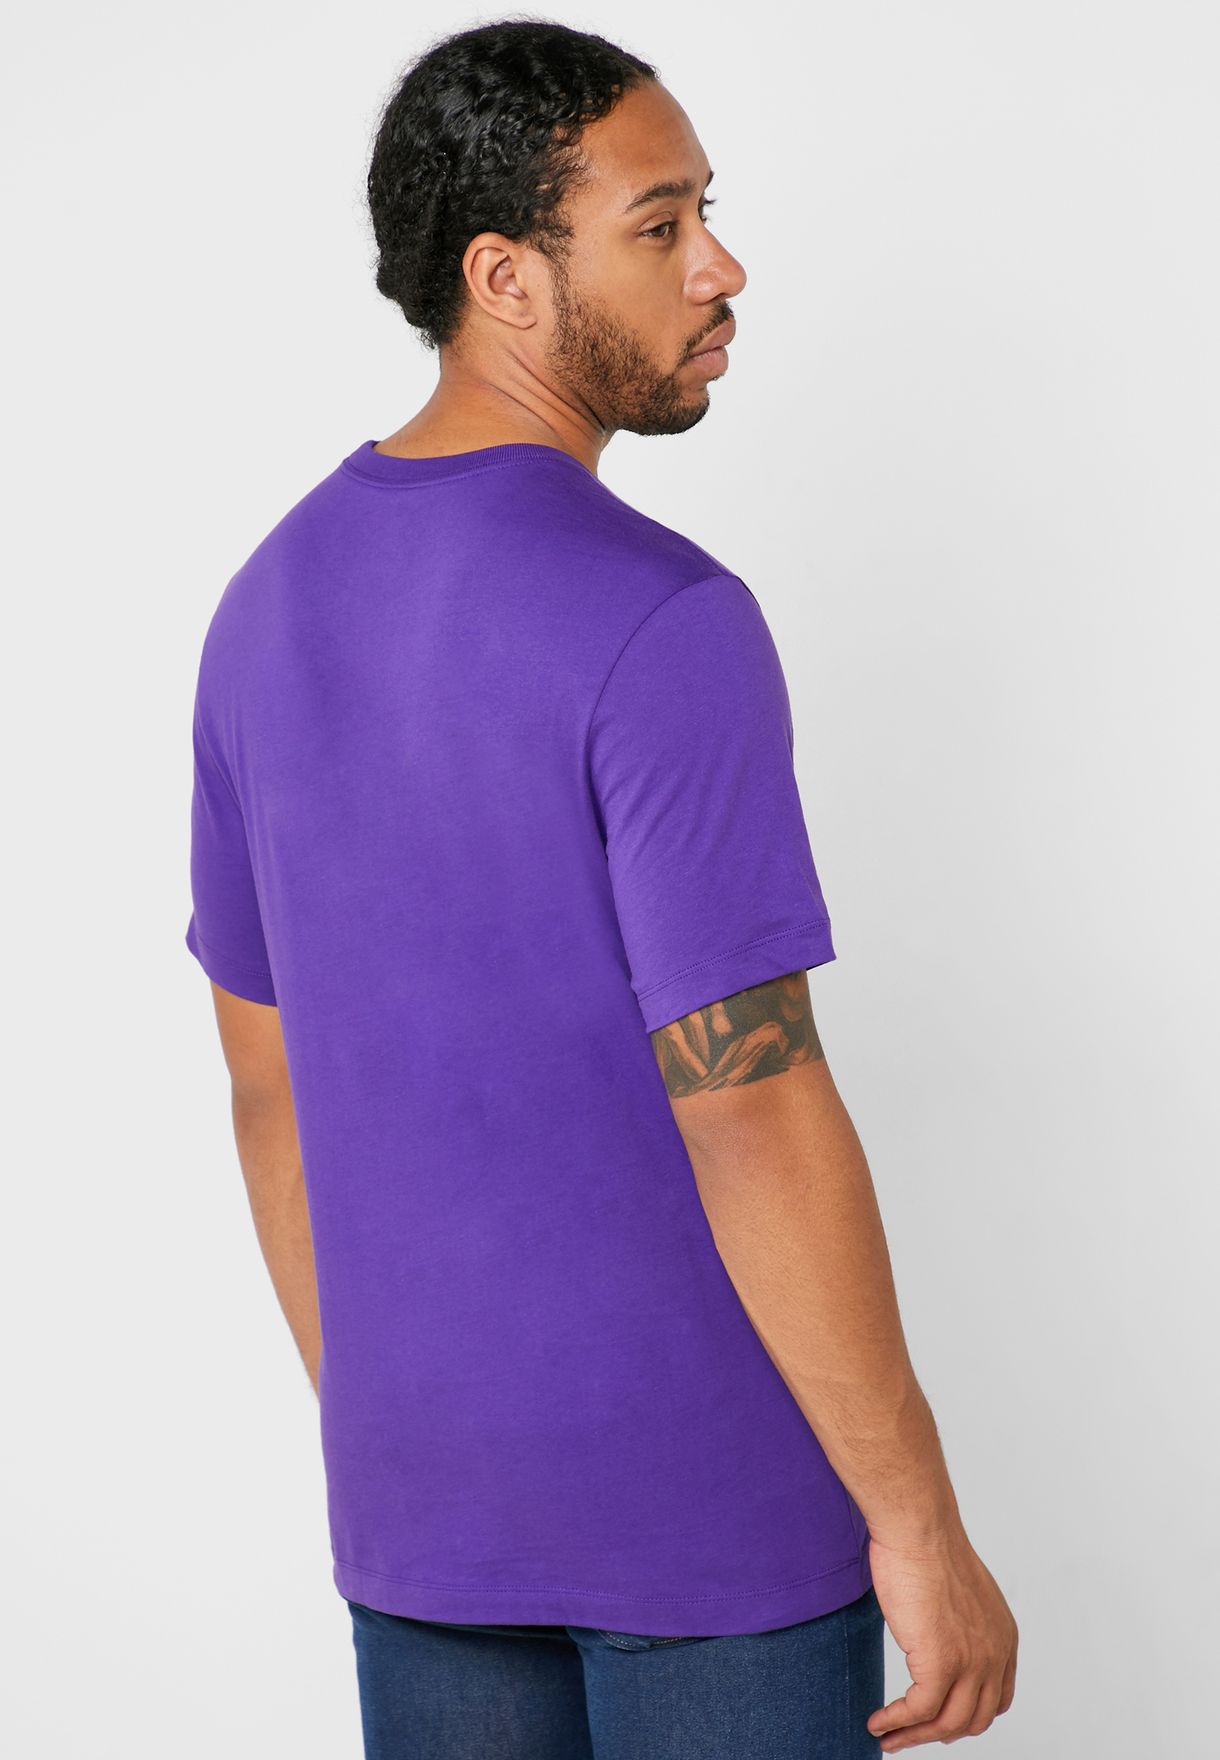 purple air jordan shirt